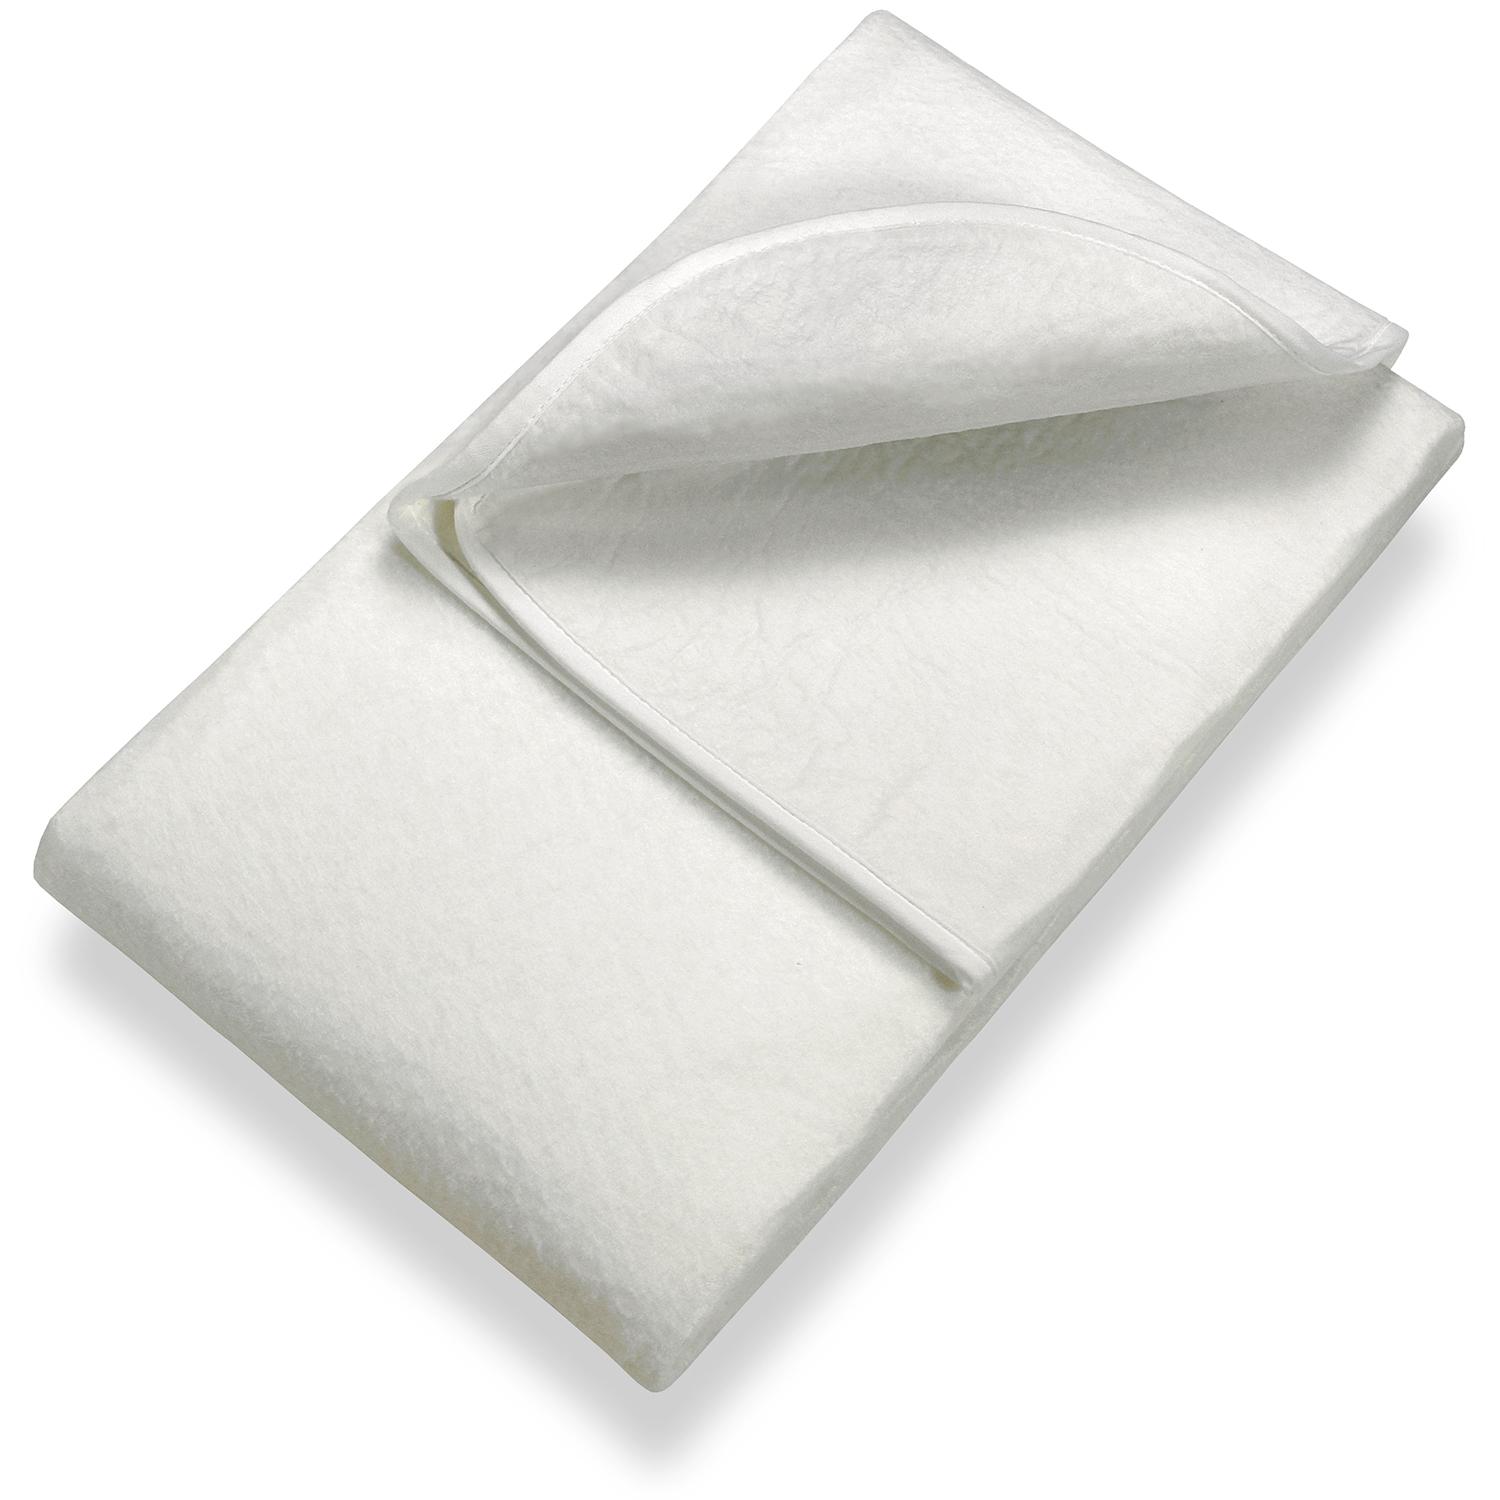 Sleezzz Basic tűfilc matrac alátét 80 x 200 cm, matracvédő a léckeretre helyezve, fehér színben